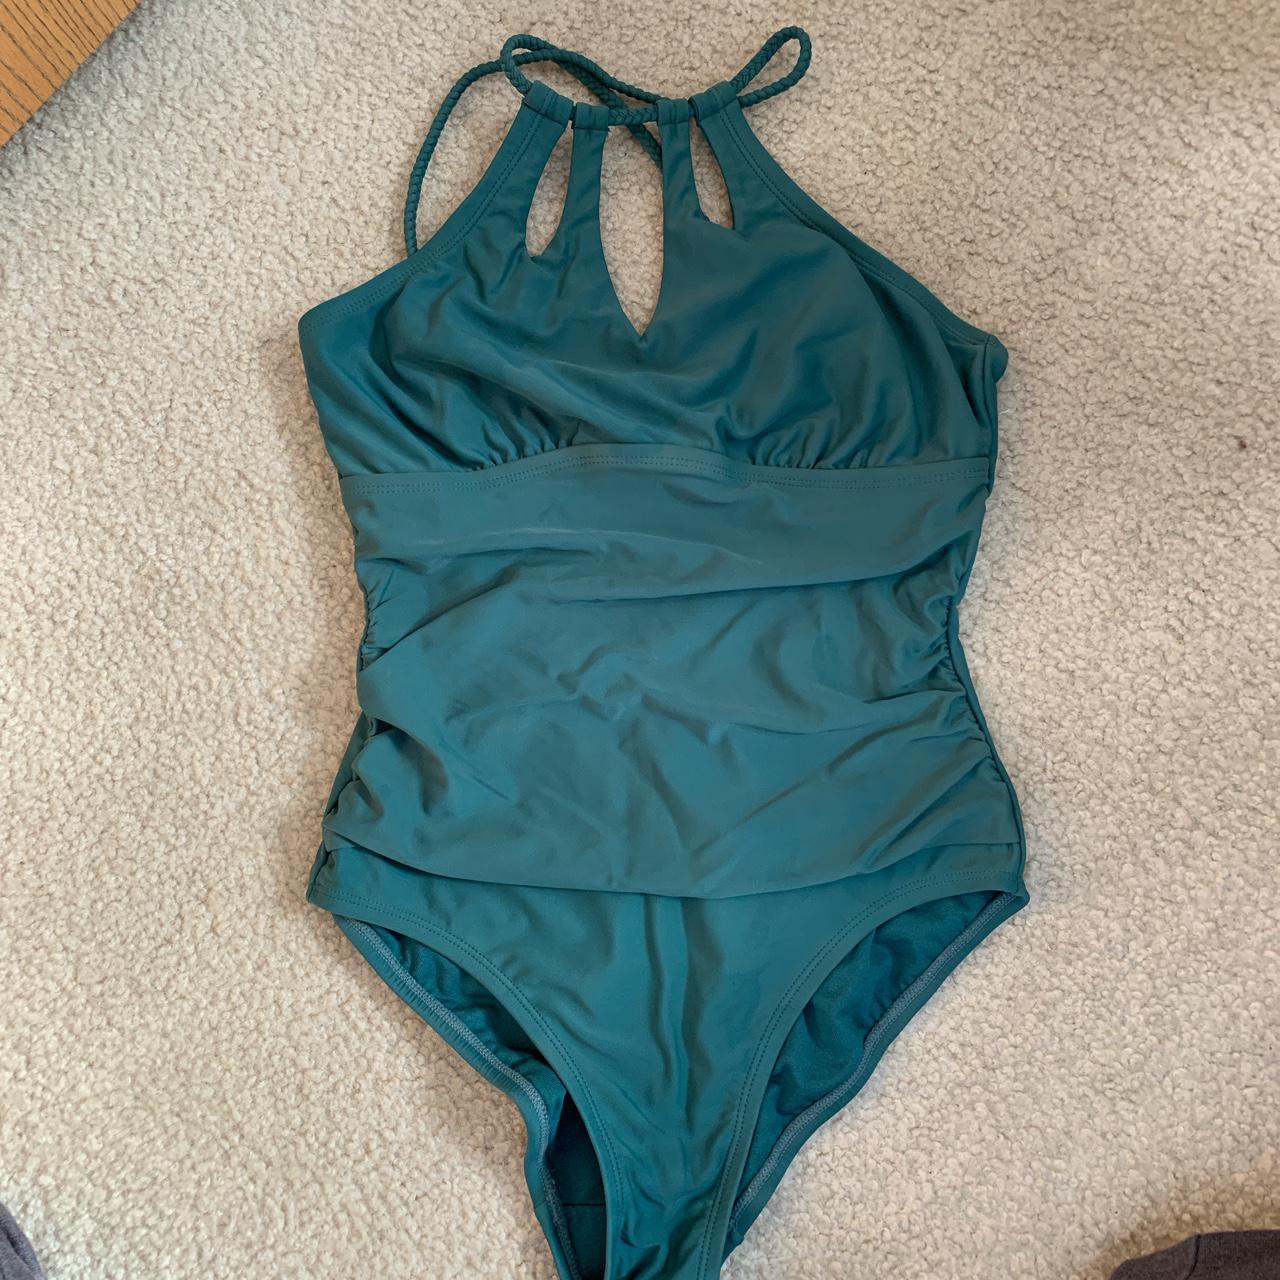 Merona Women's Swimsuit-one-piece | Depop